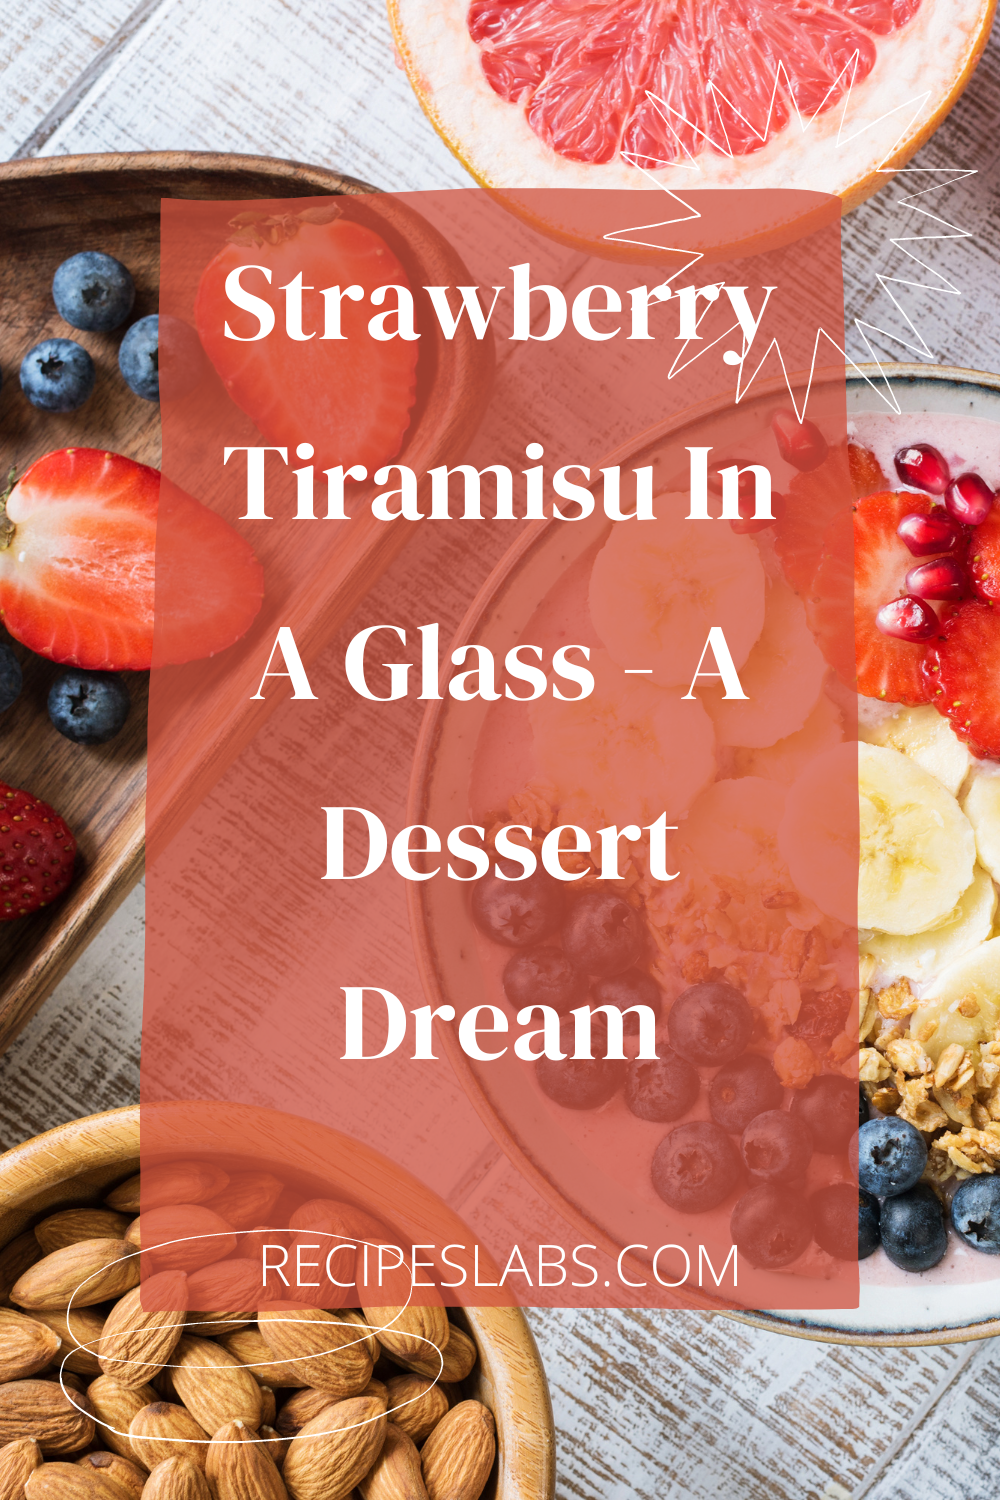 Strawberry Tiramisu In A Glass - A Dessert Dream